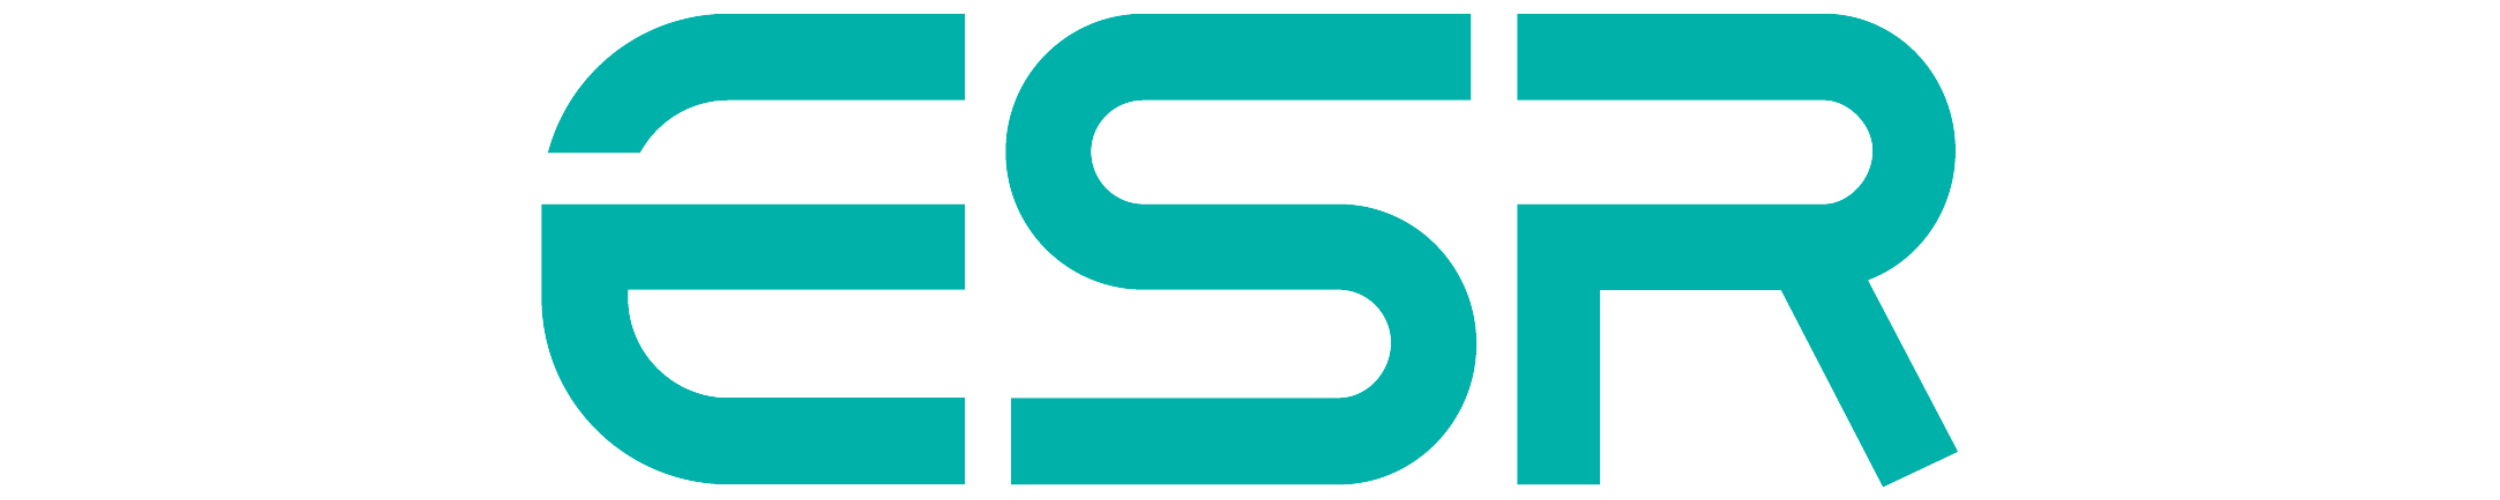 ESR Gear Logo